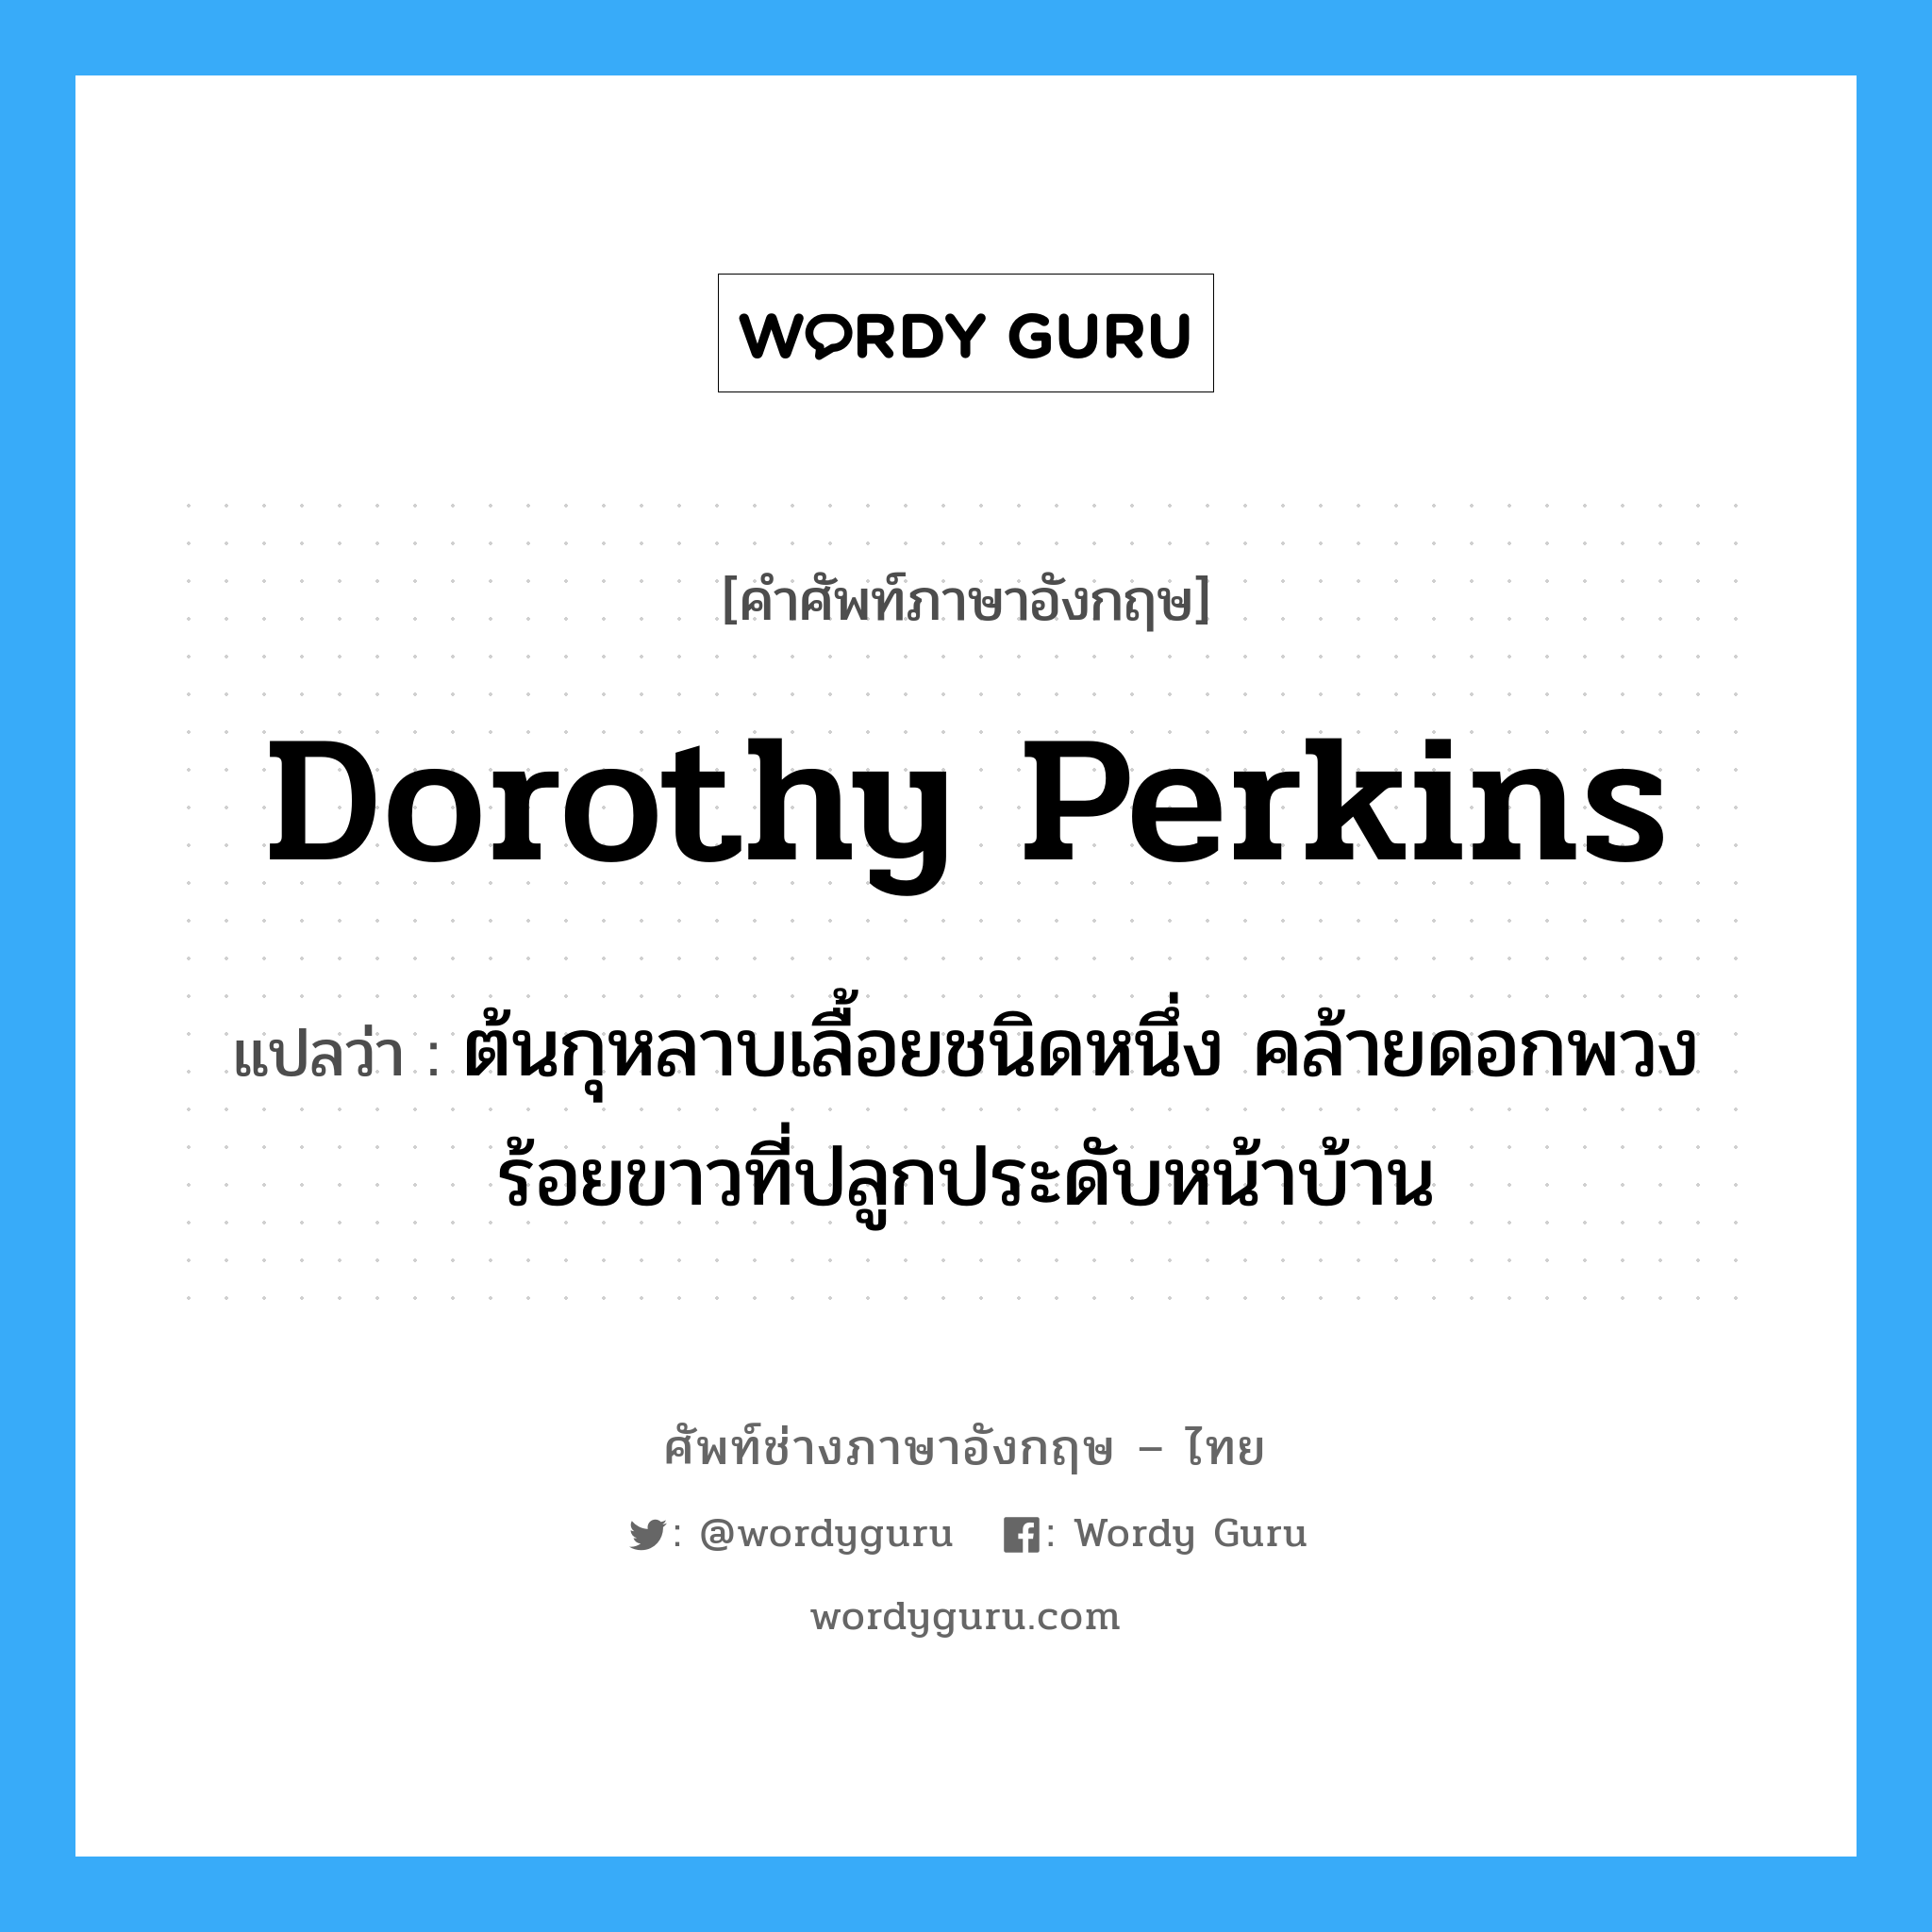 Dorothy perkins แปลว่า?, คำศัพท์ช่างภาษาอังกฤษ - ไทย Dorothy perkins คำศัพท์ภาษาอังกฤษ Dorothy perkins แปลว่า ต้นกุหลาบเลื้อยชนิดหนึ่ง คล้ายดอกพวงร้อยขาวที่ปลูกประดับหน้าบ้าน